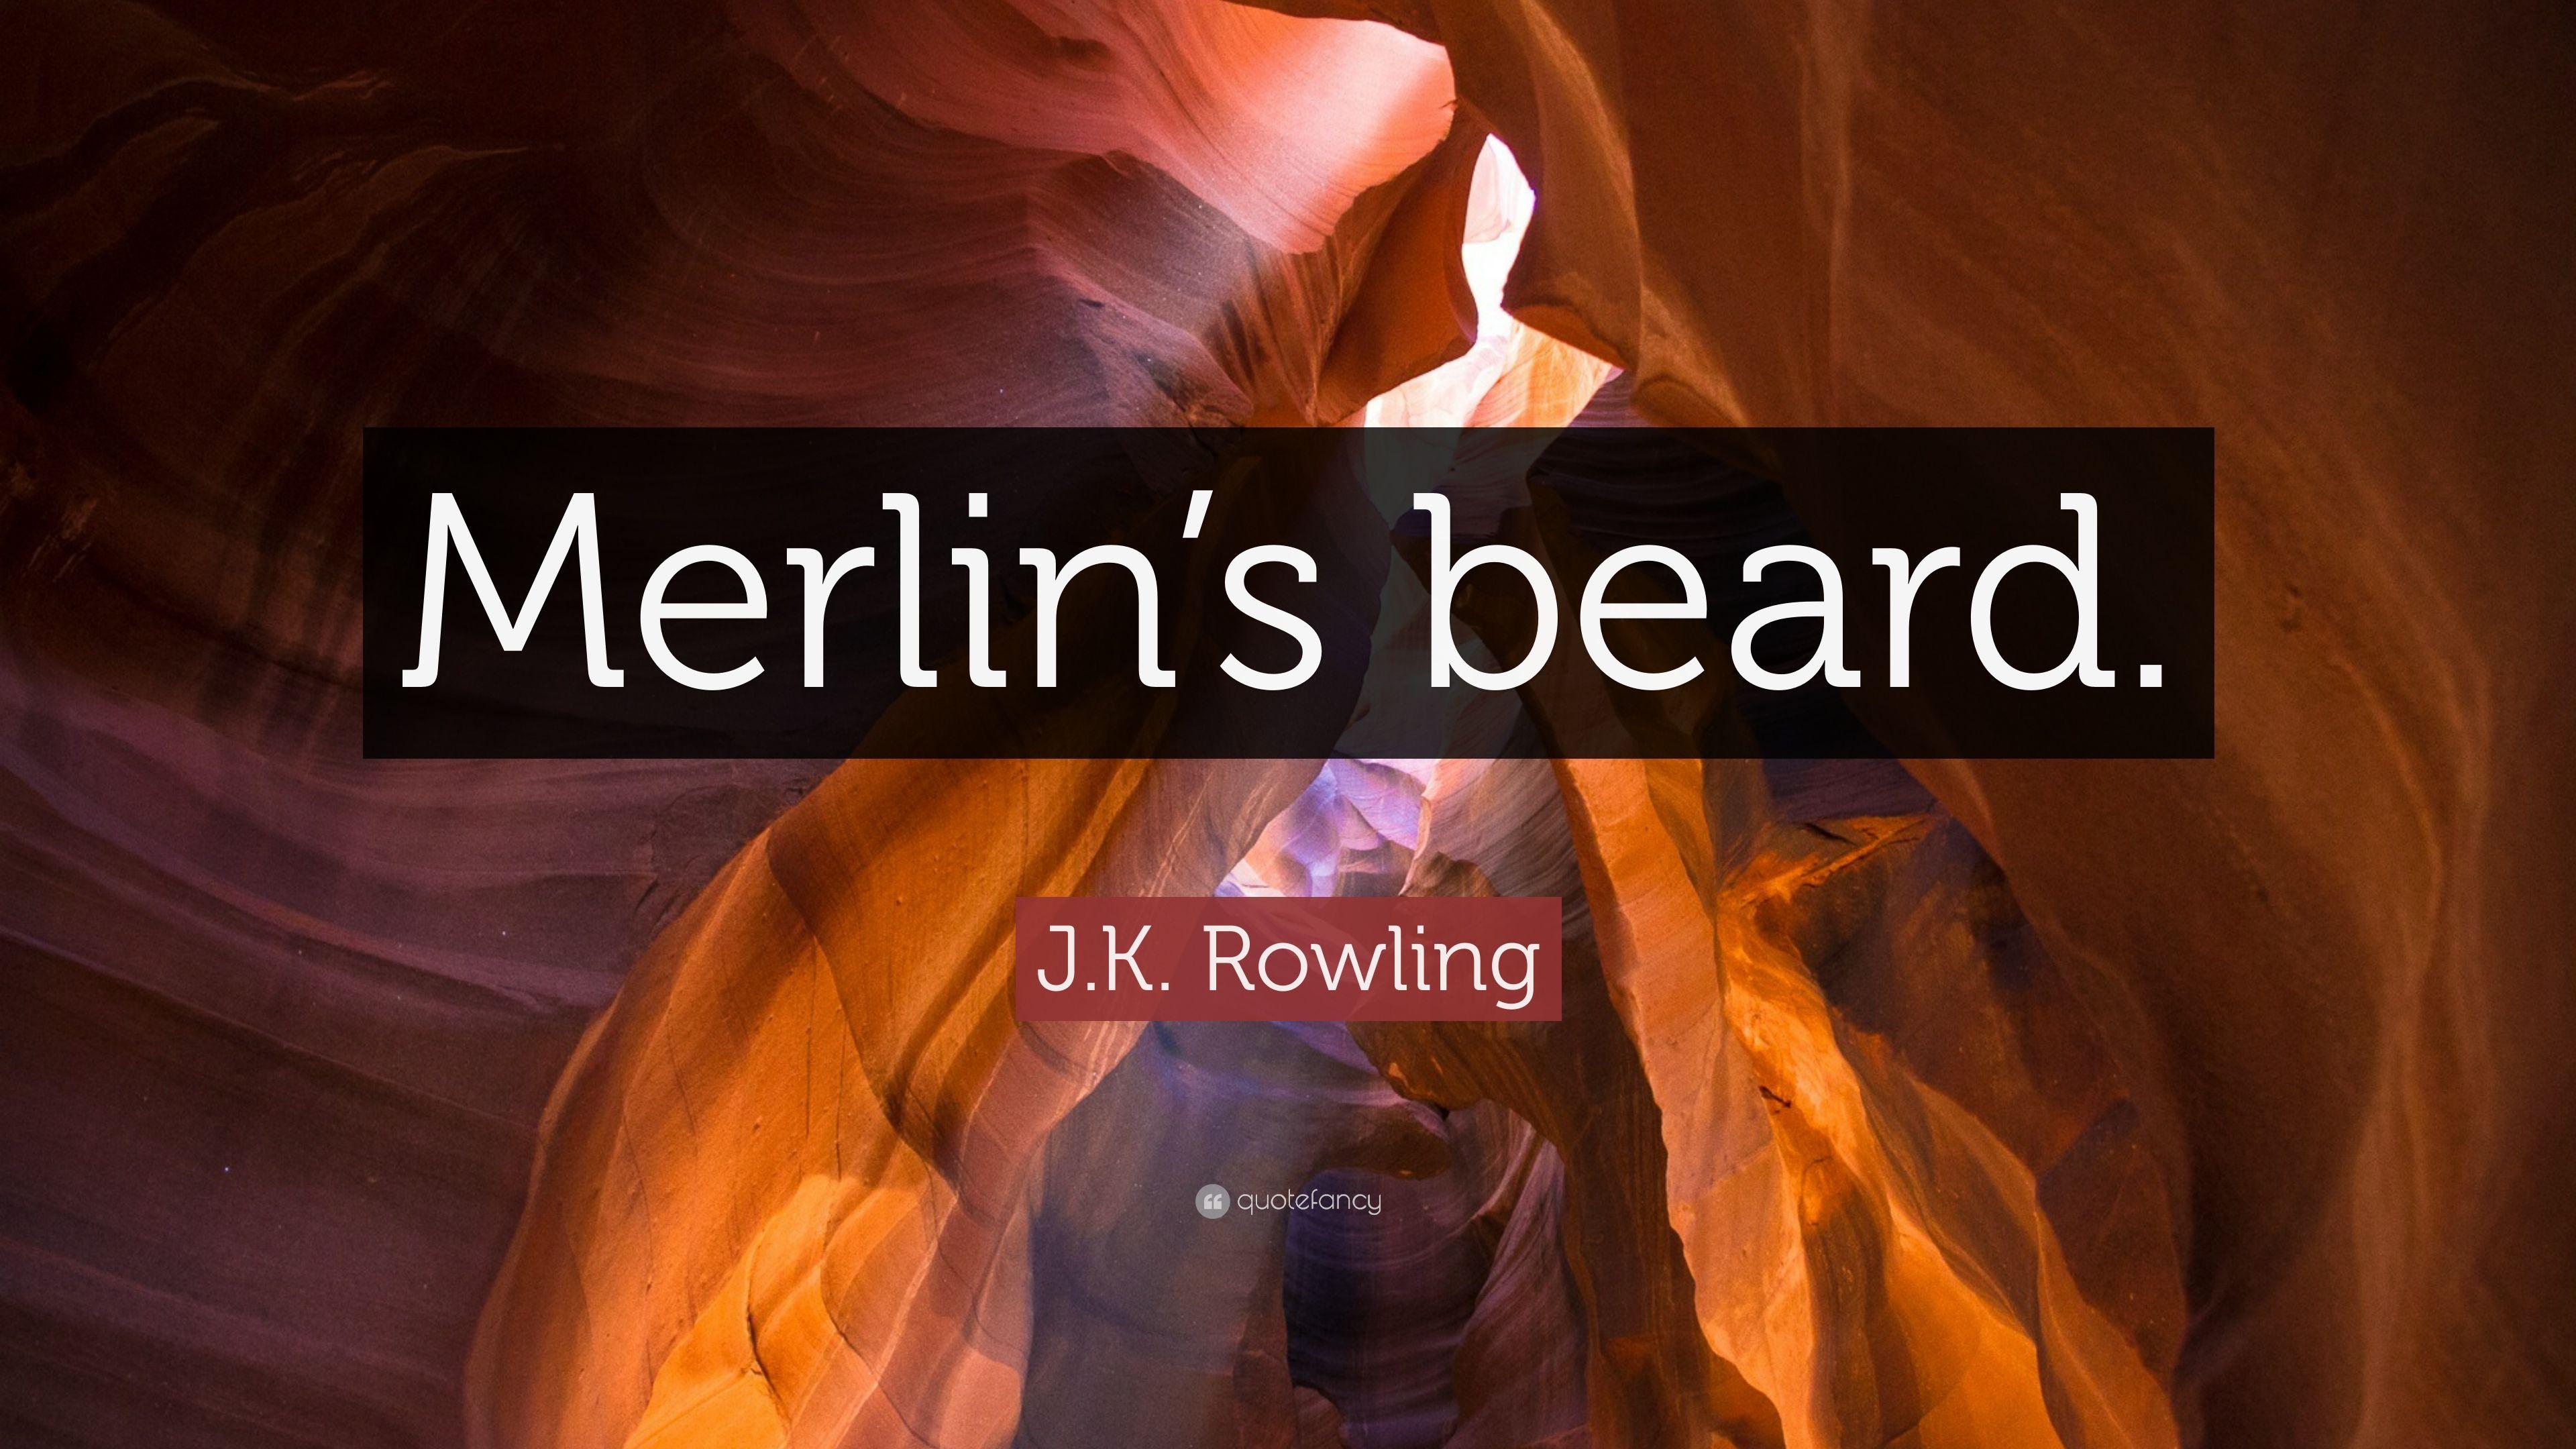 J.K. Rowling Quote: “Merlin's beard.” (12 wallpaper)